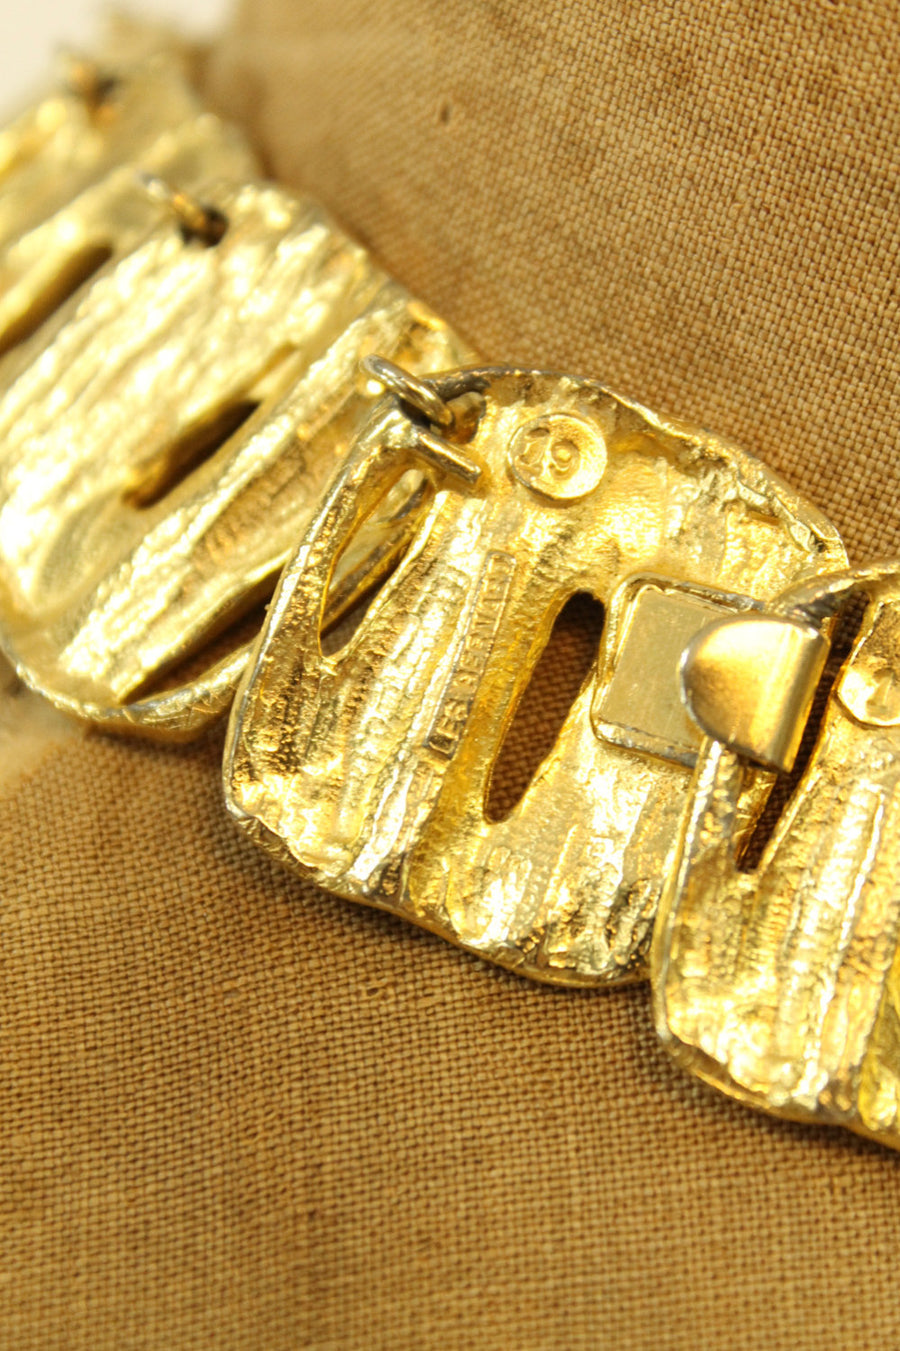 1980s Les Bernard necklace modernist gold choker jewelry | new fall